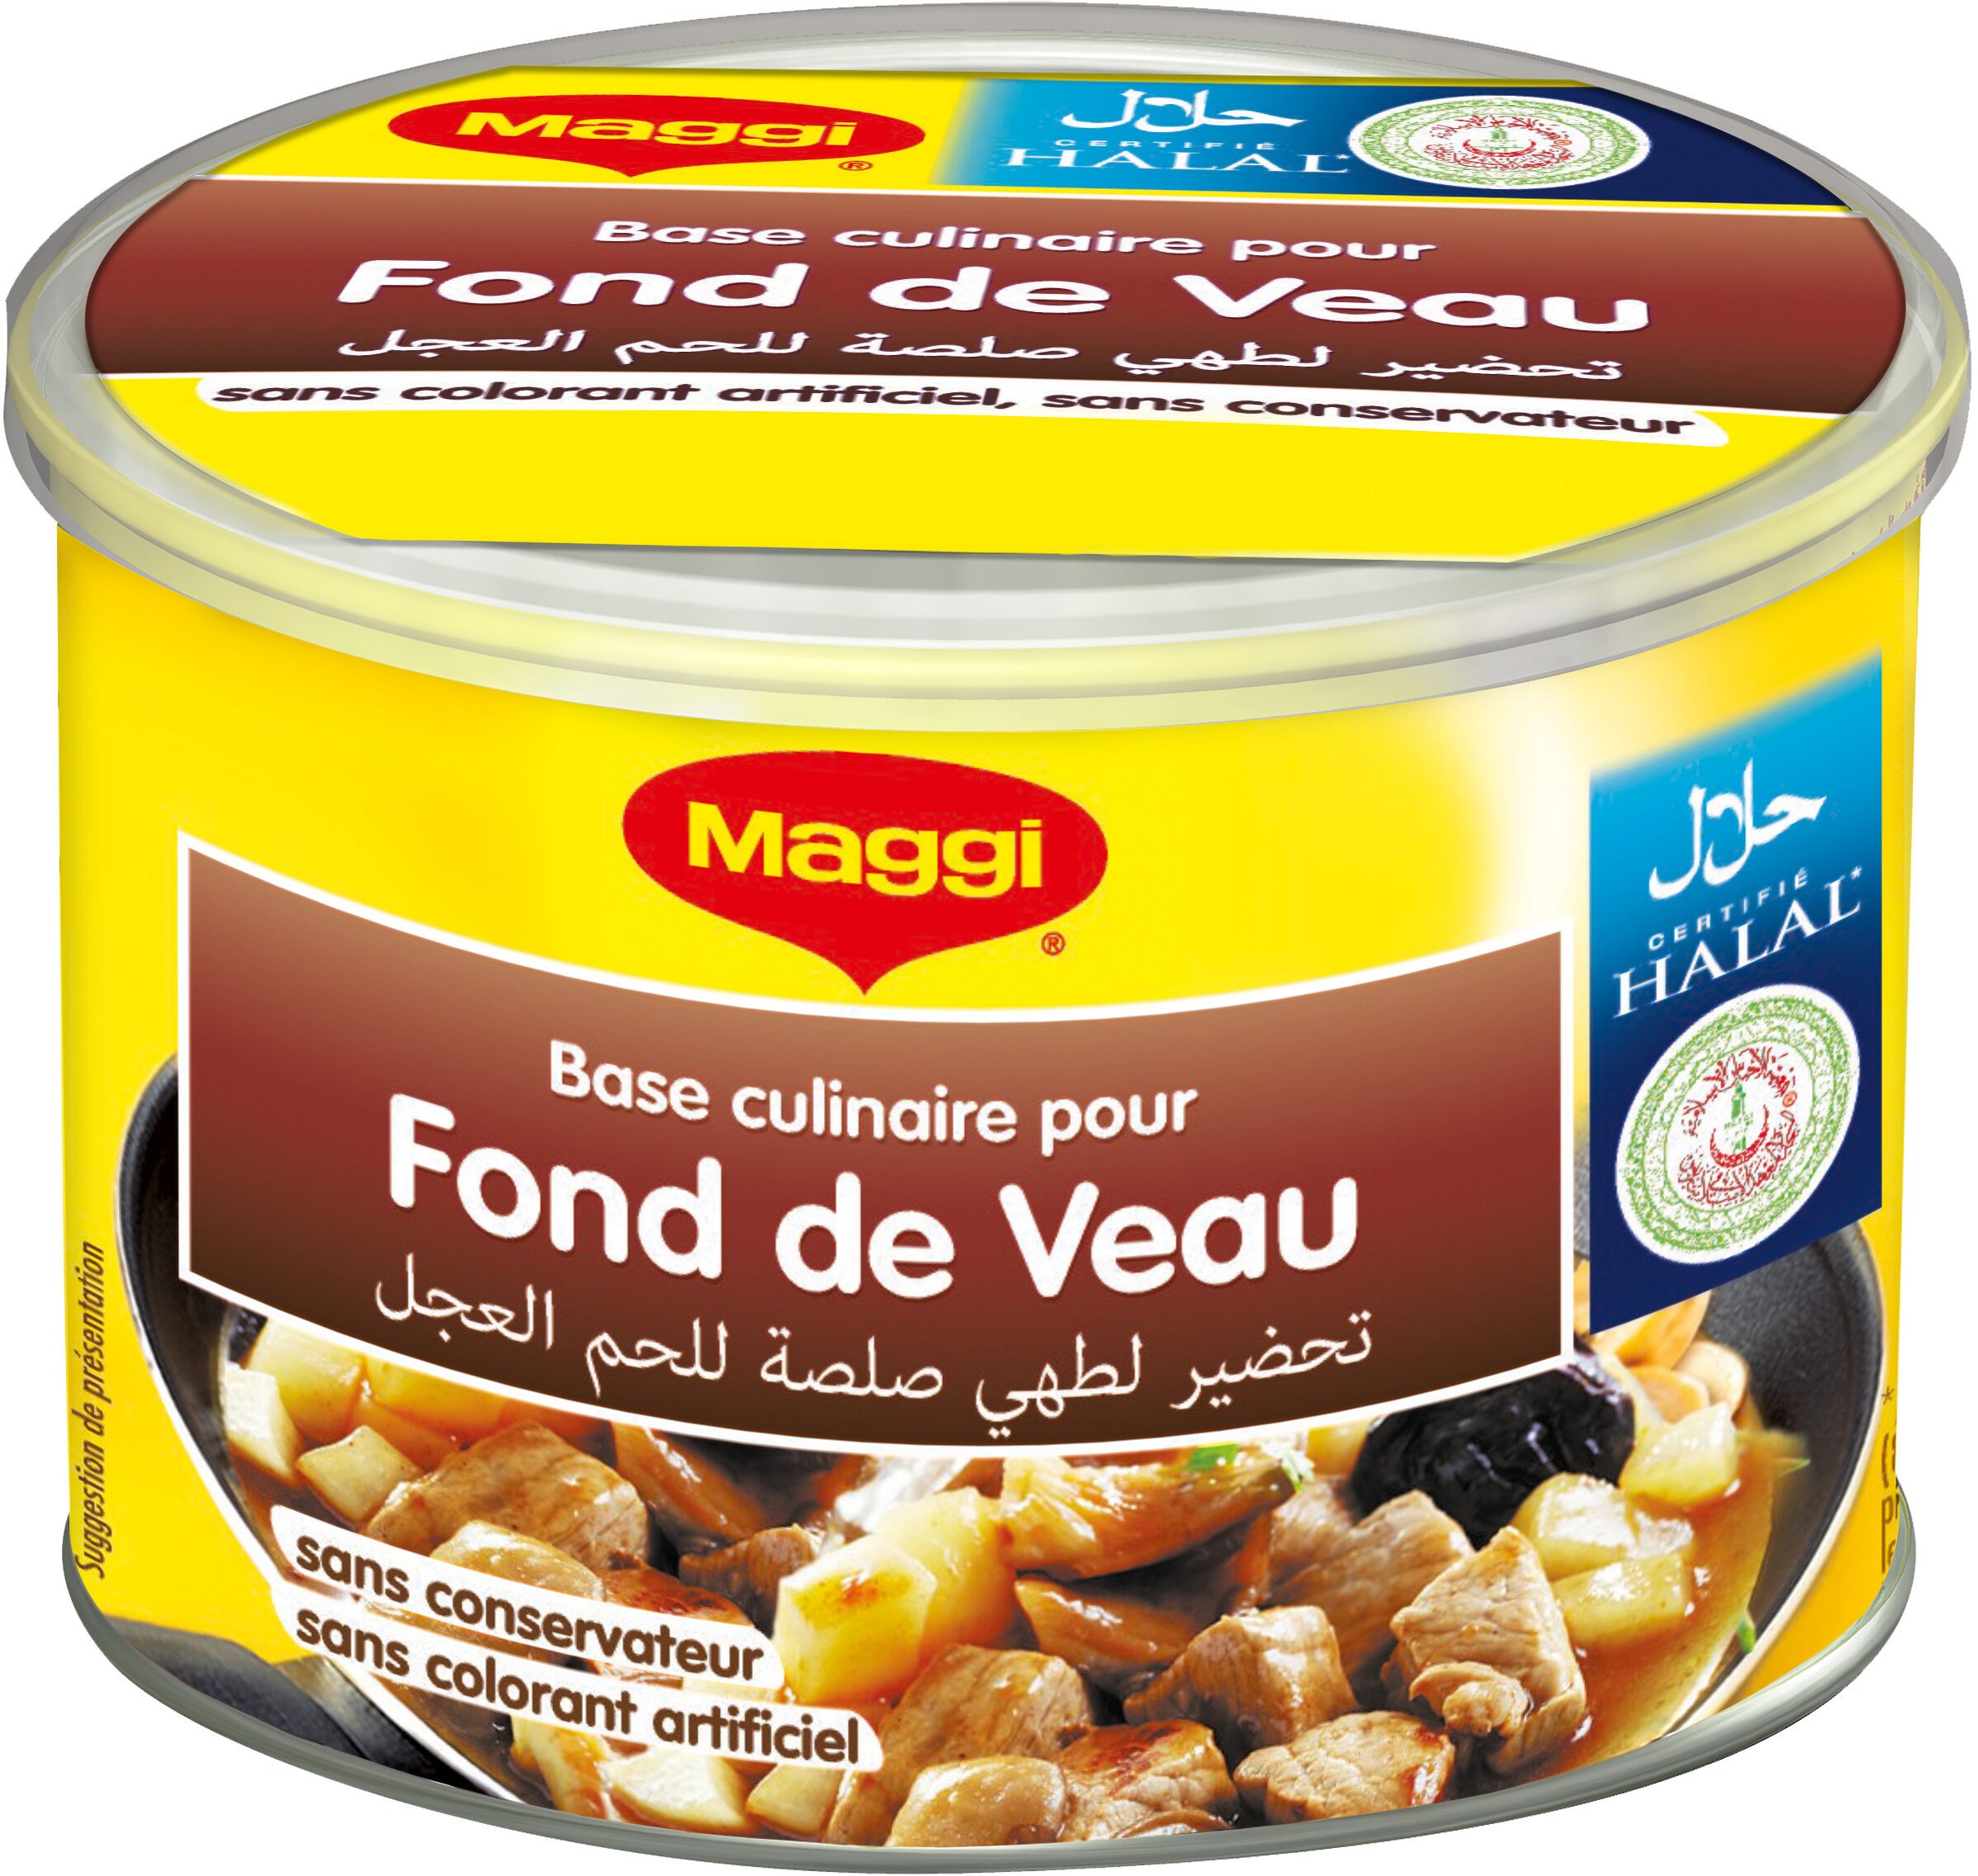 MAGGI Fond de Veau Halal boîte 110g - Produit